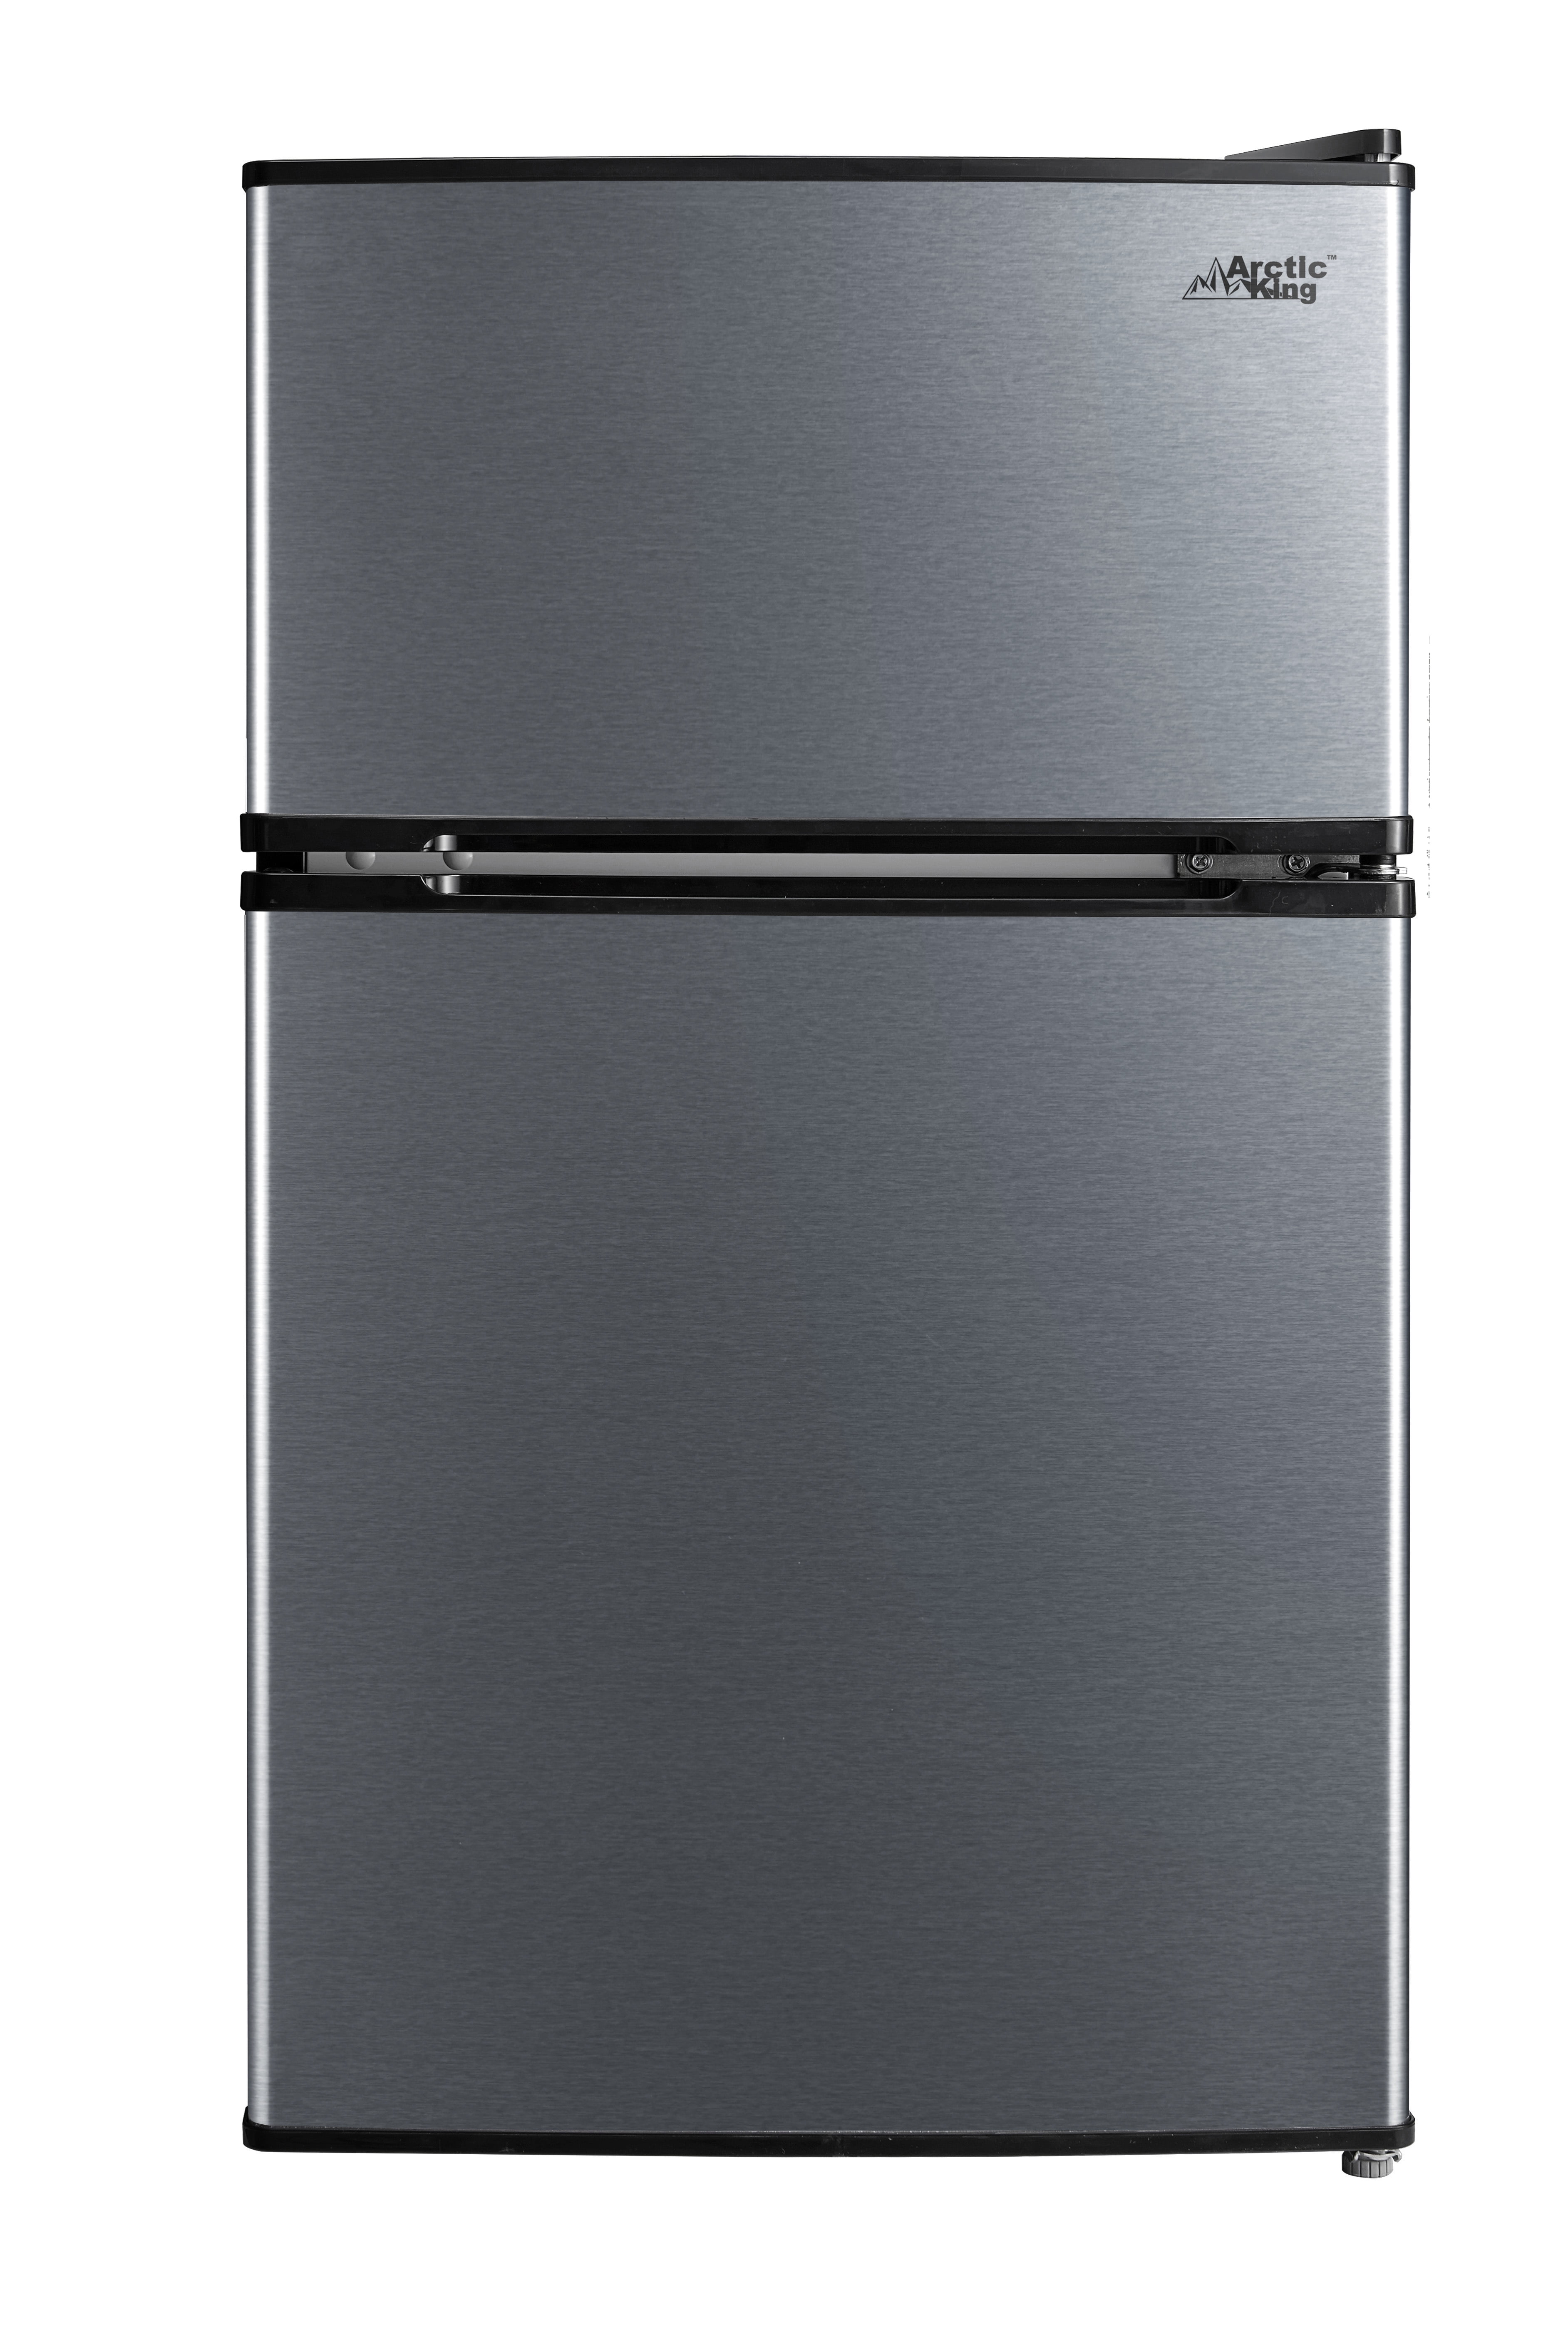 Arctic King 3.2 Cu ft Two Door Compact Refrigerator with Freezer, Black Stainless Steel look - Walmart.com